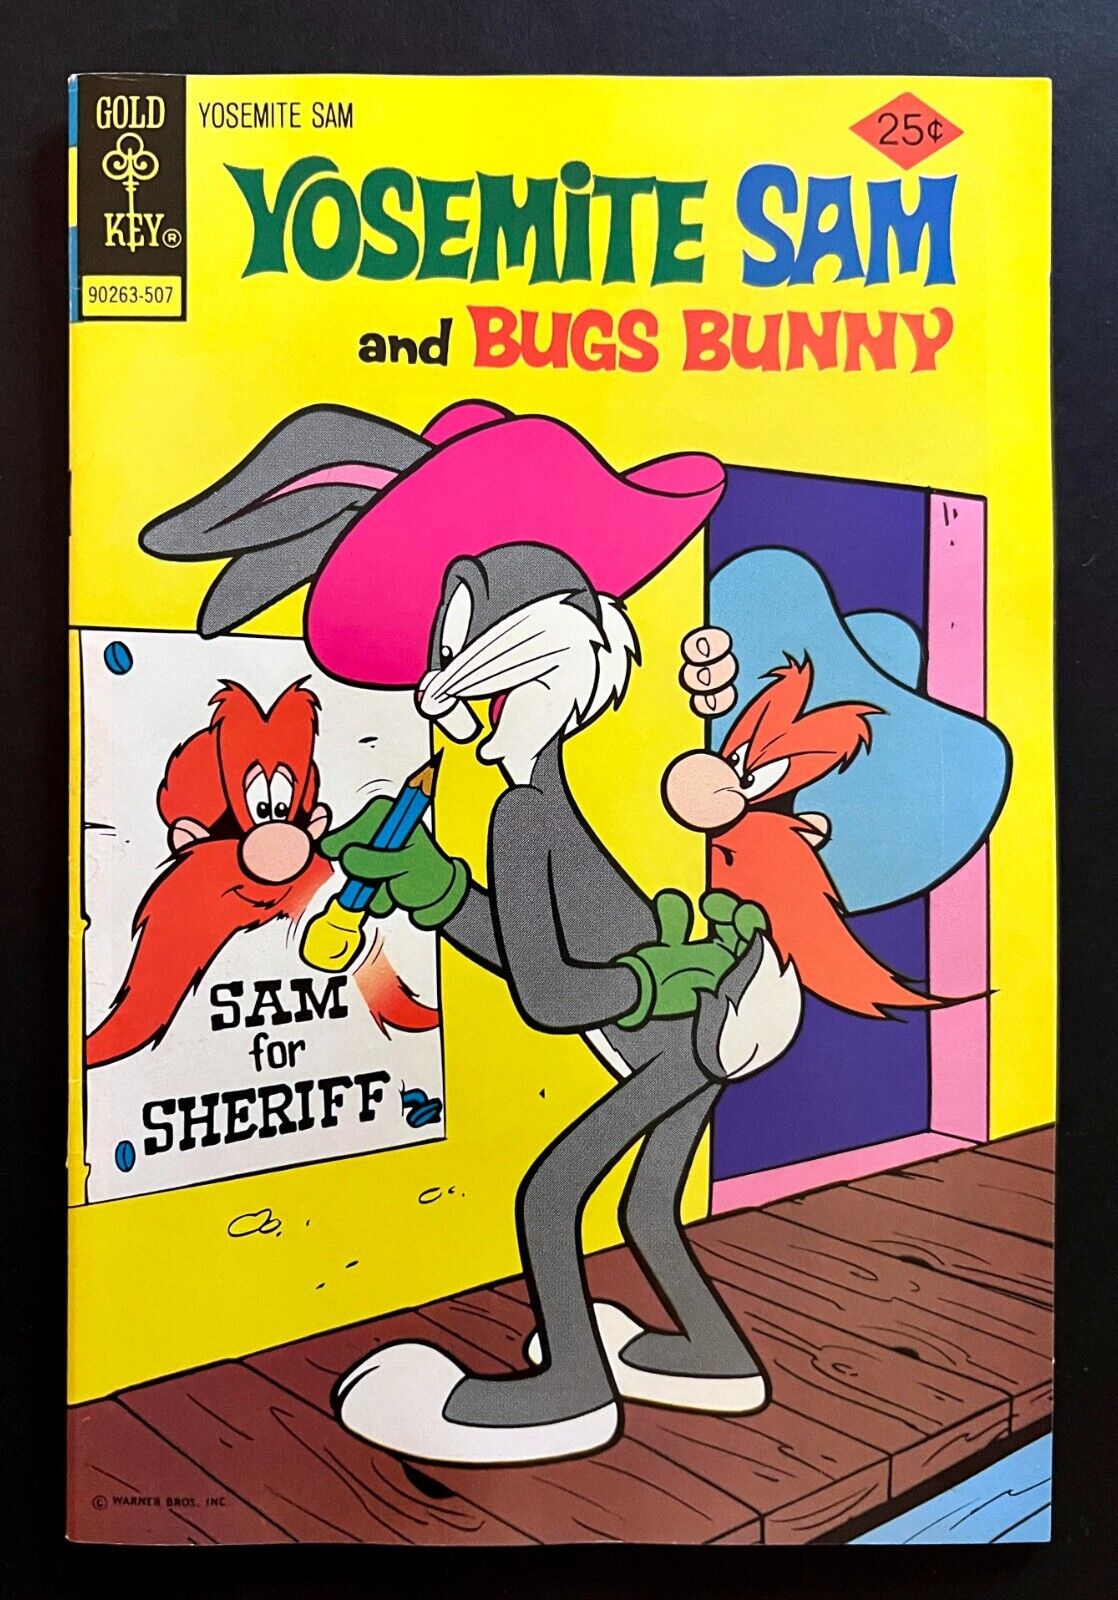 YOSEMITE SAM #29 BUGS BUNNY Hi-Grade Looney Tunes Gold Key 1975